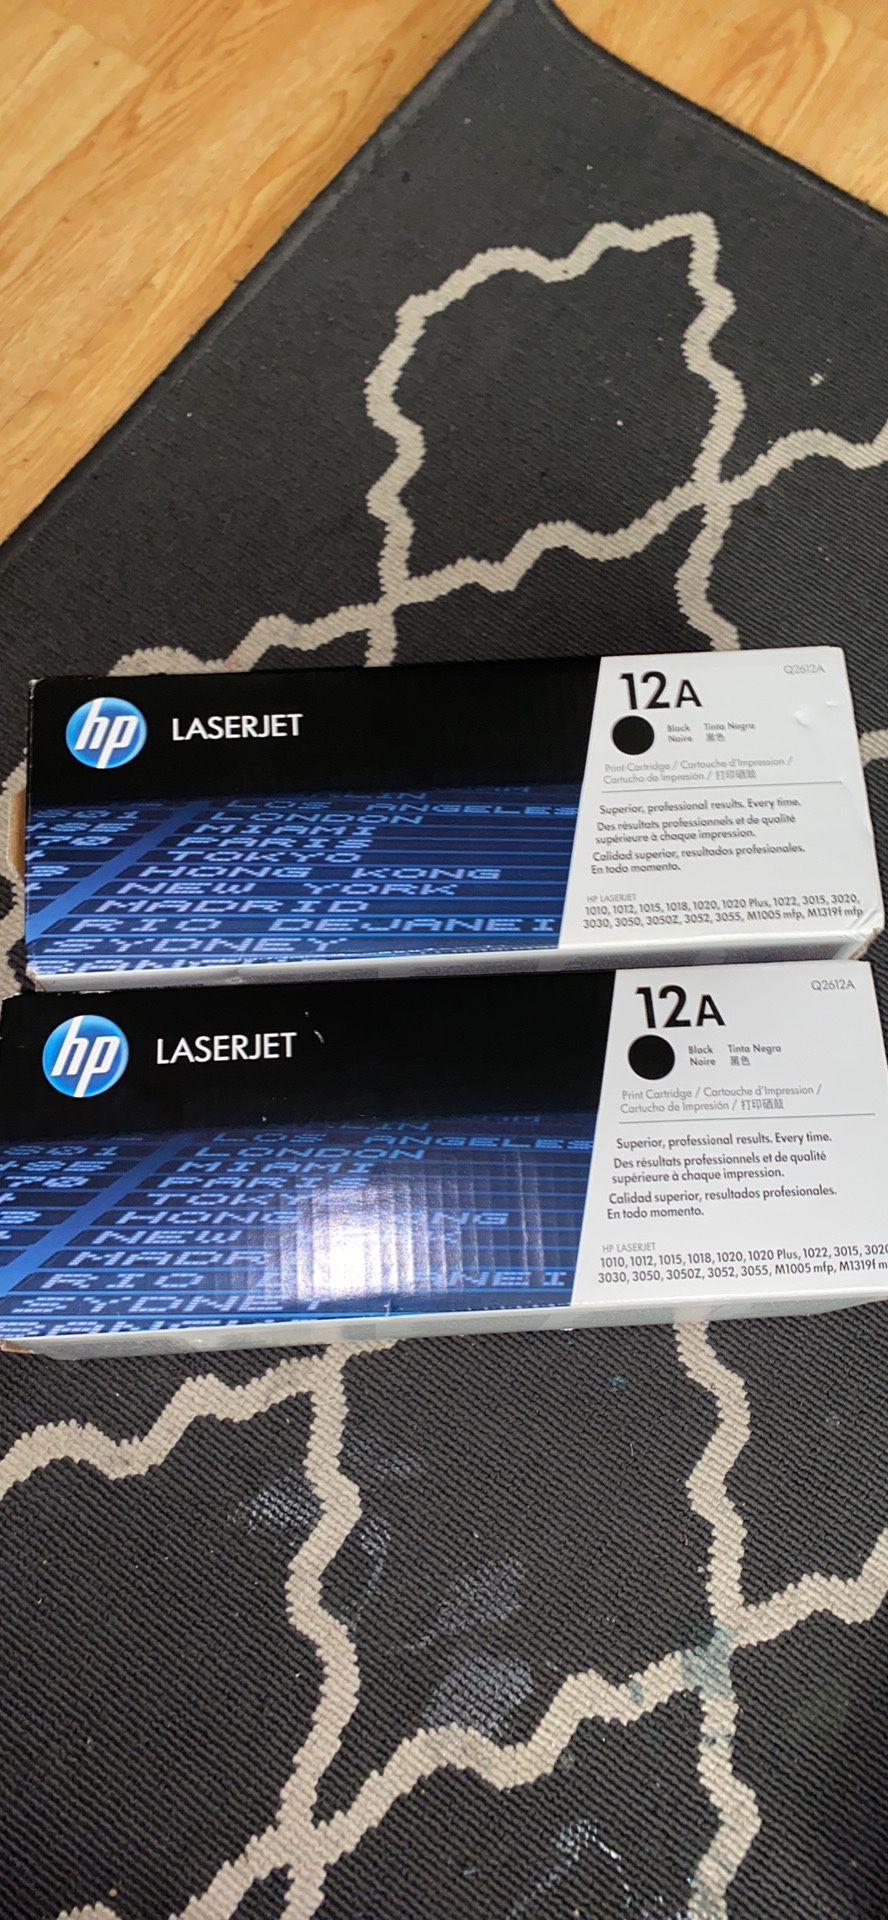 HP Laserjet 12a Black Cartridges